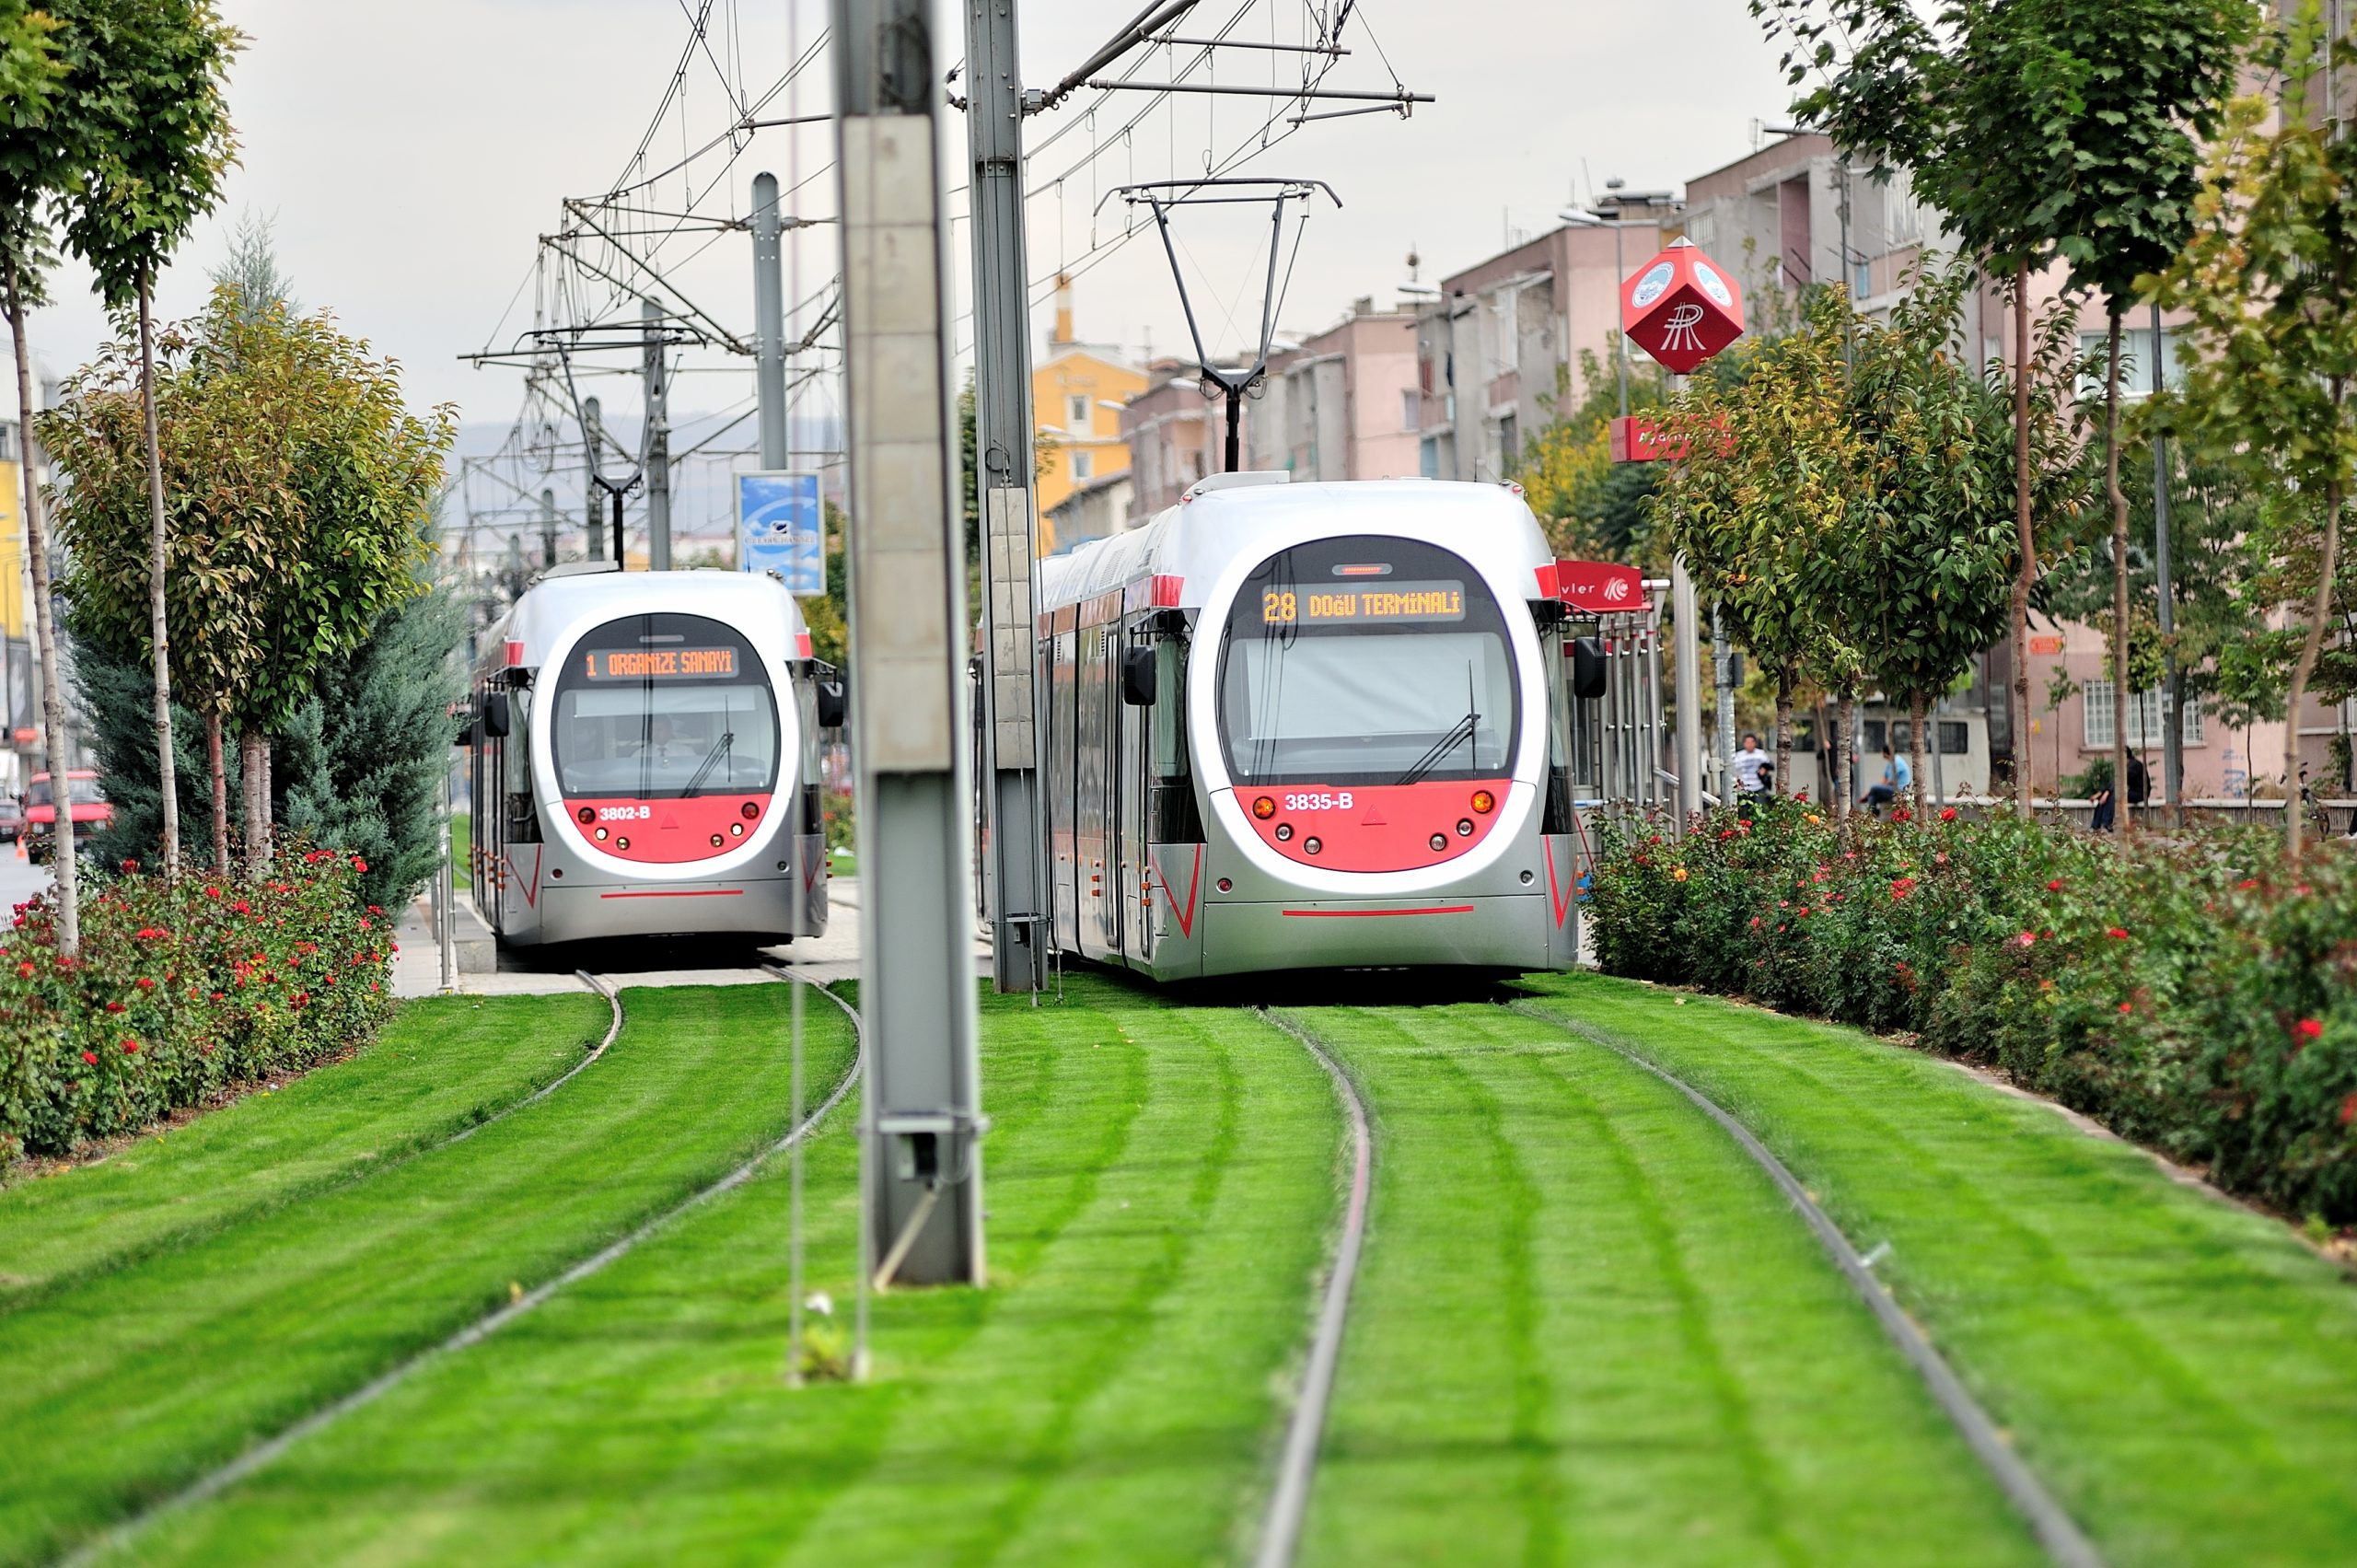 Kayseri’de tramvayların elektrik giderine “rüzgar” çözümü